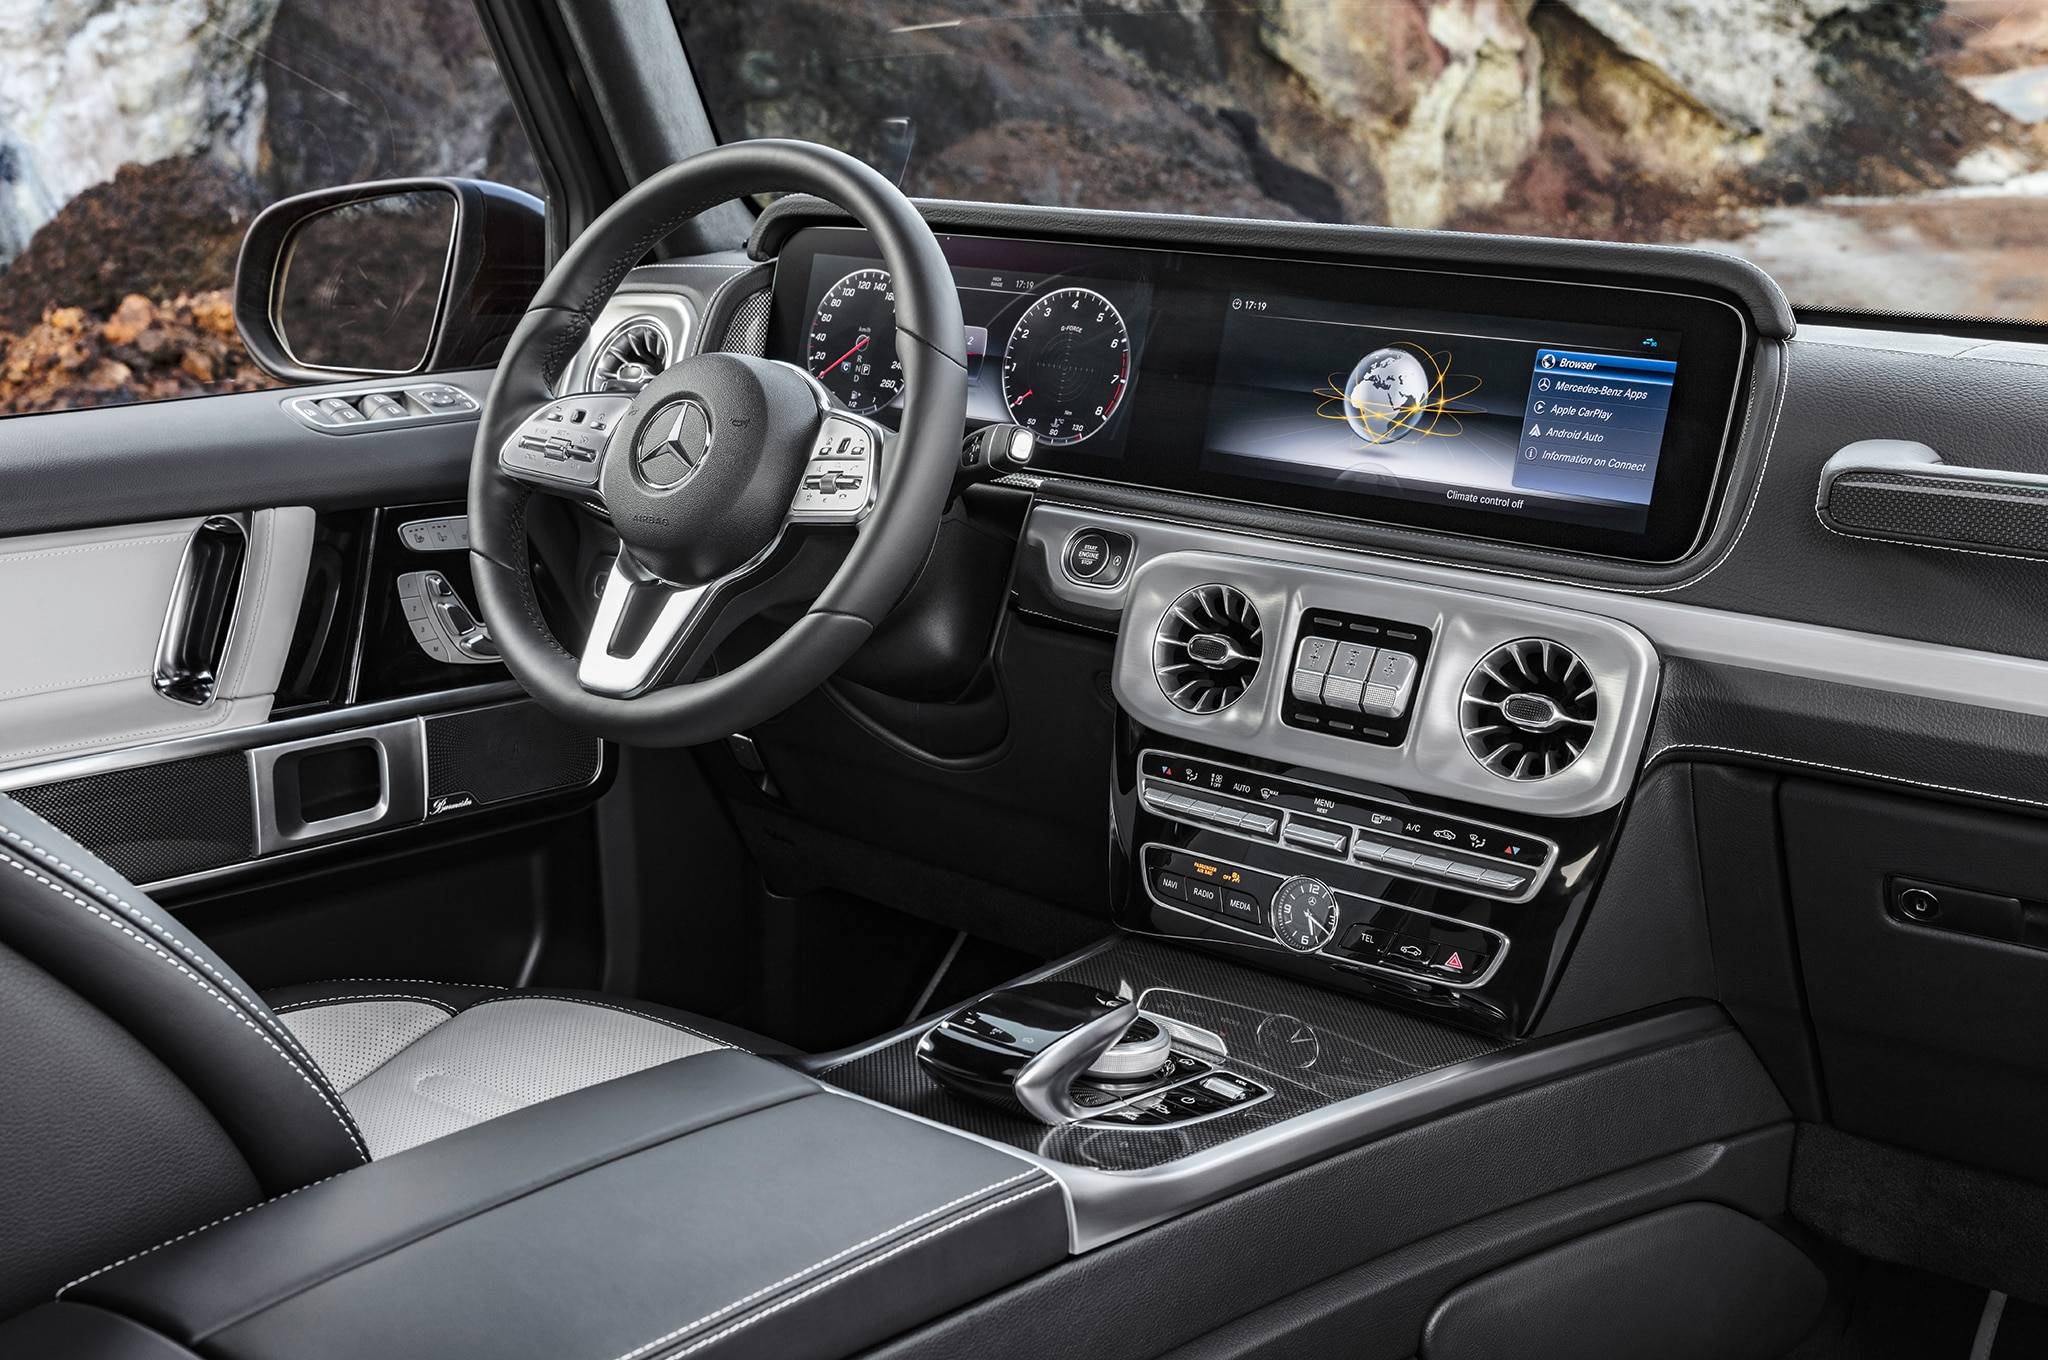 2019-Mercedes-Benz-G-Class-dashboard-02.jpg